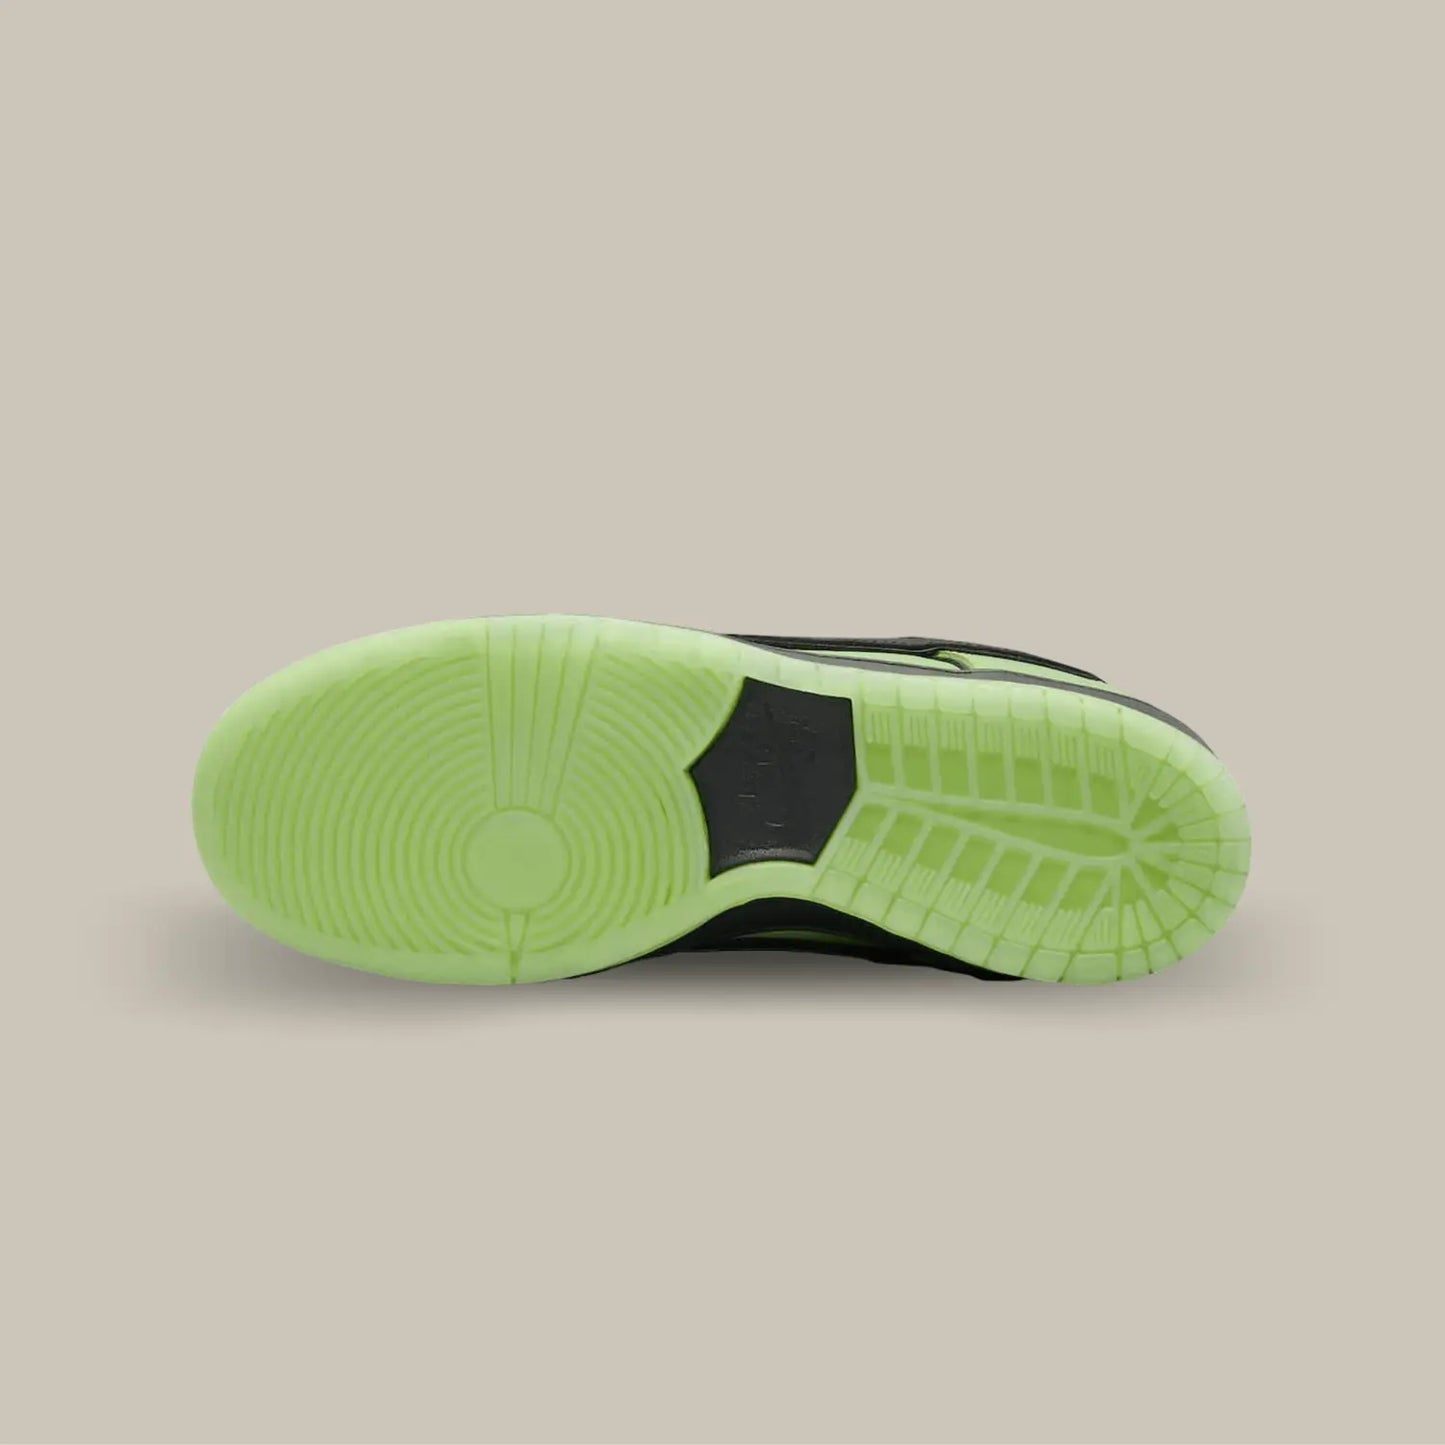 La semelle de la  Nike SB Dunk Low The powerpuff Buttercup de couleur verte avec l'empiècement central noire.